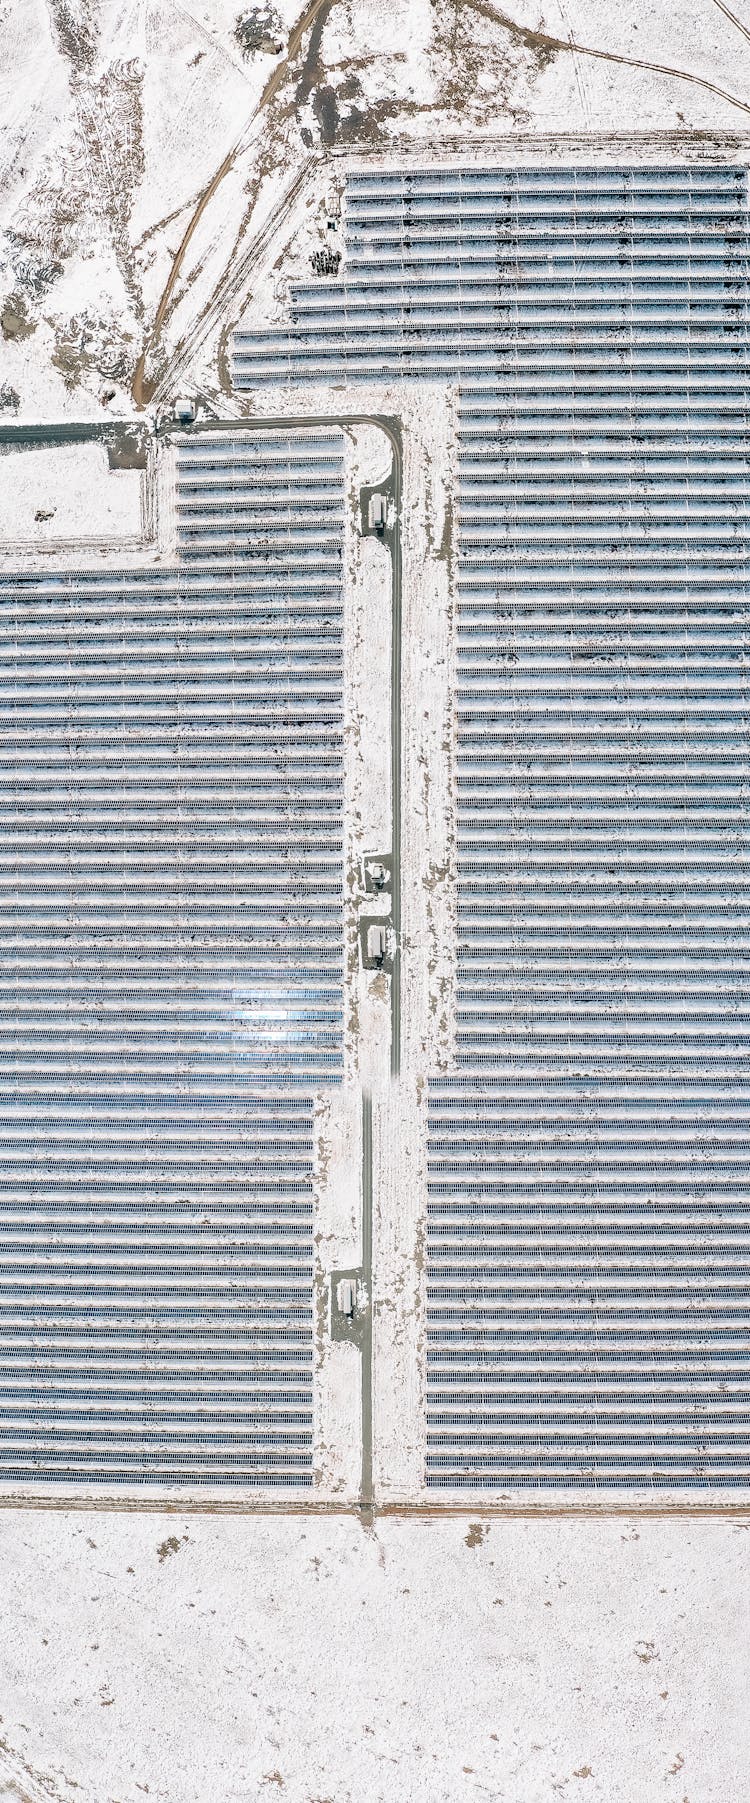 Aerial View Of A Solar Farm